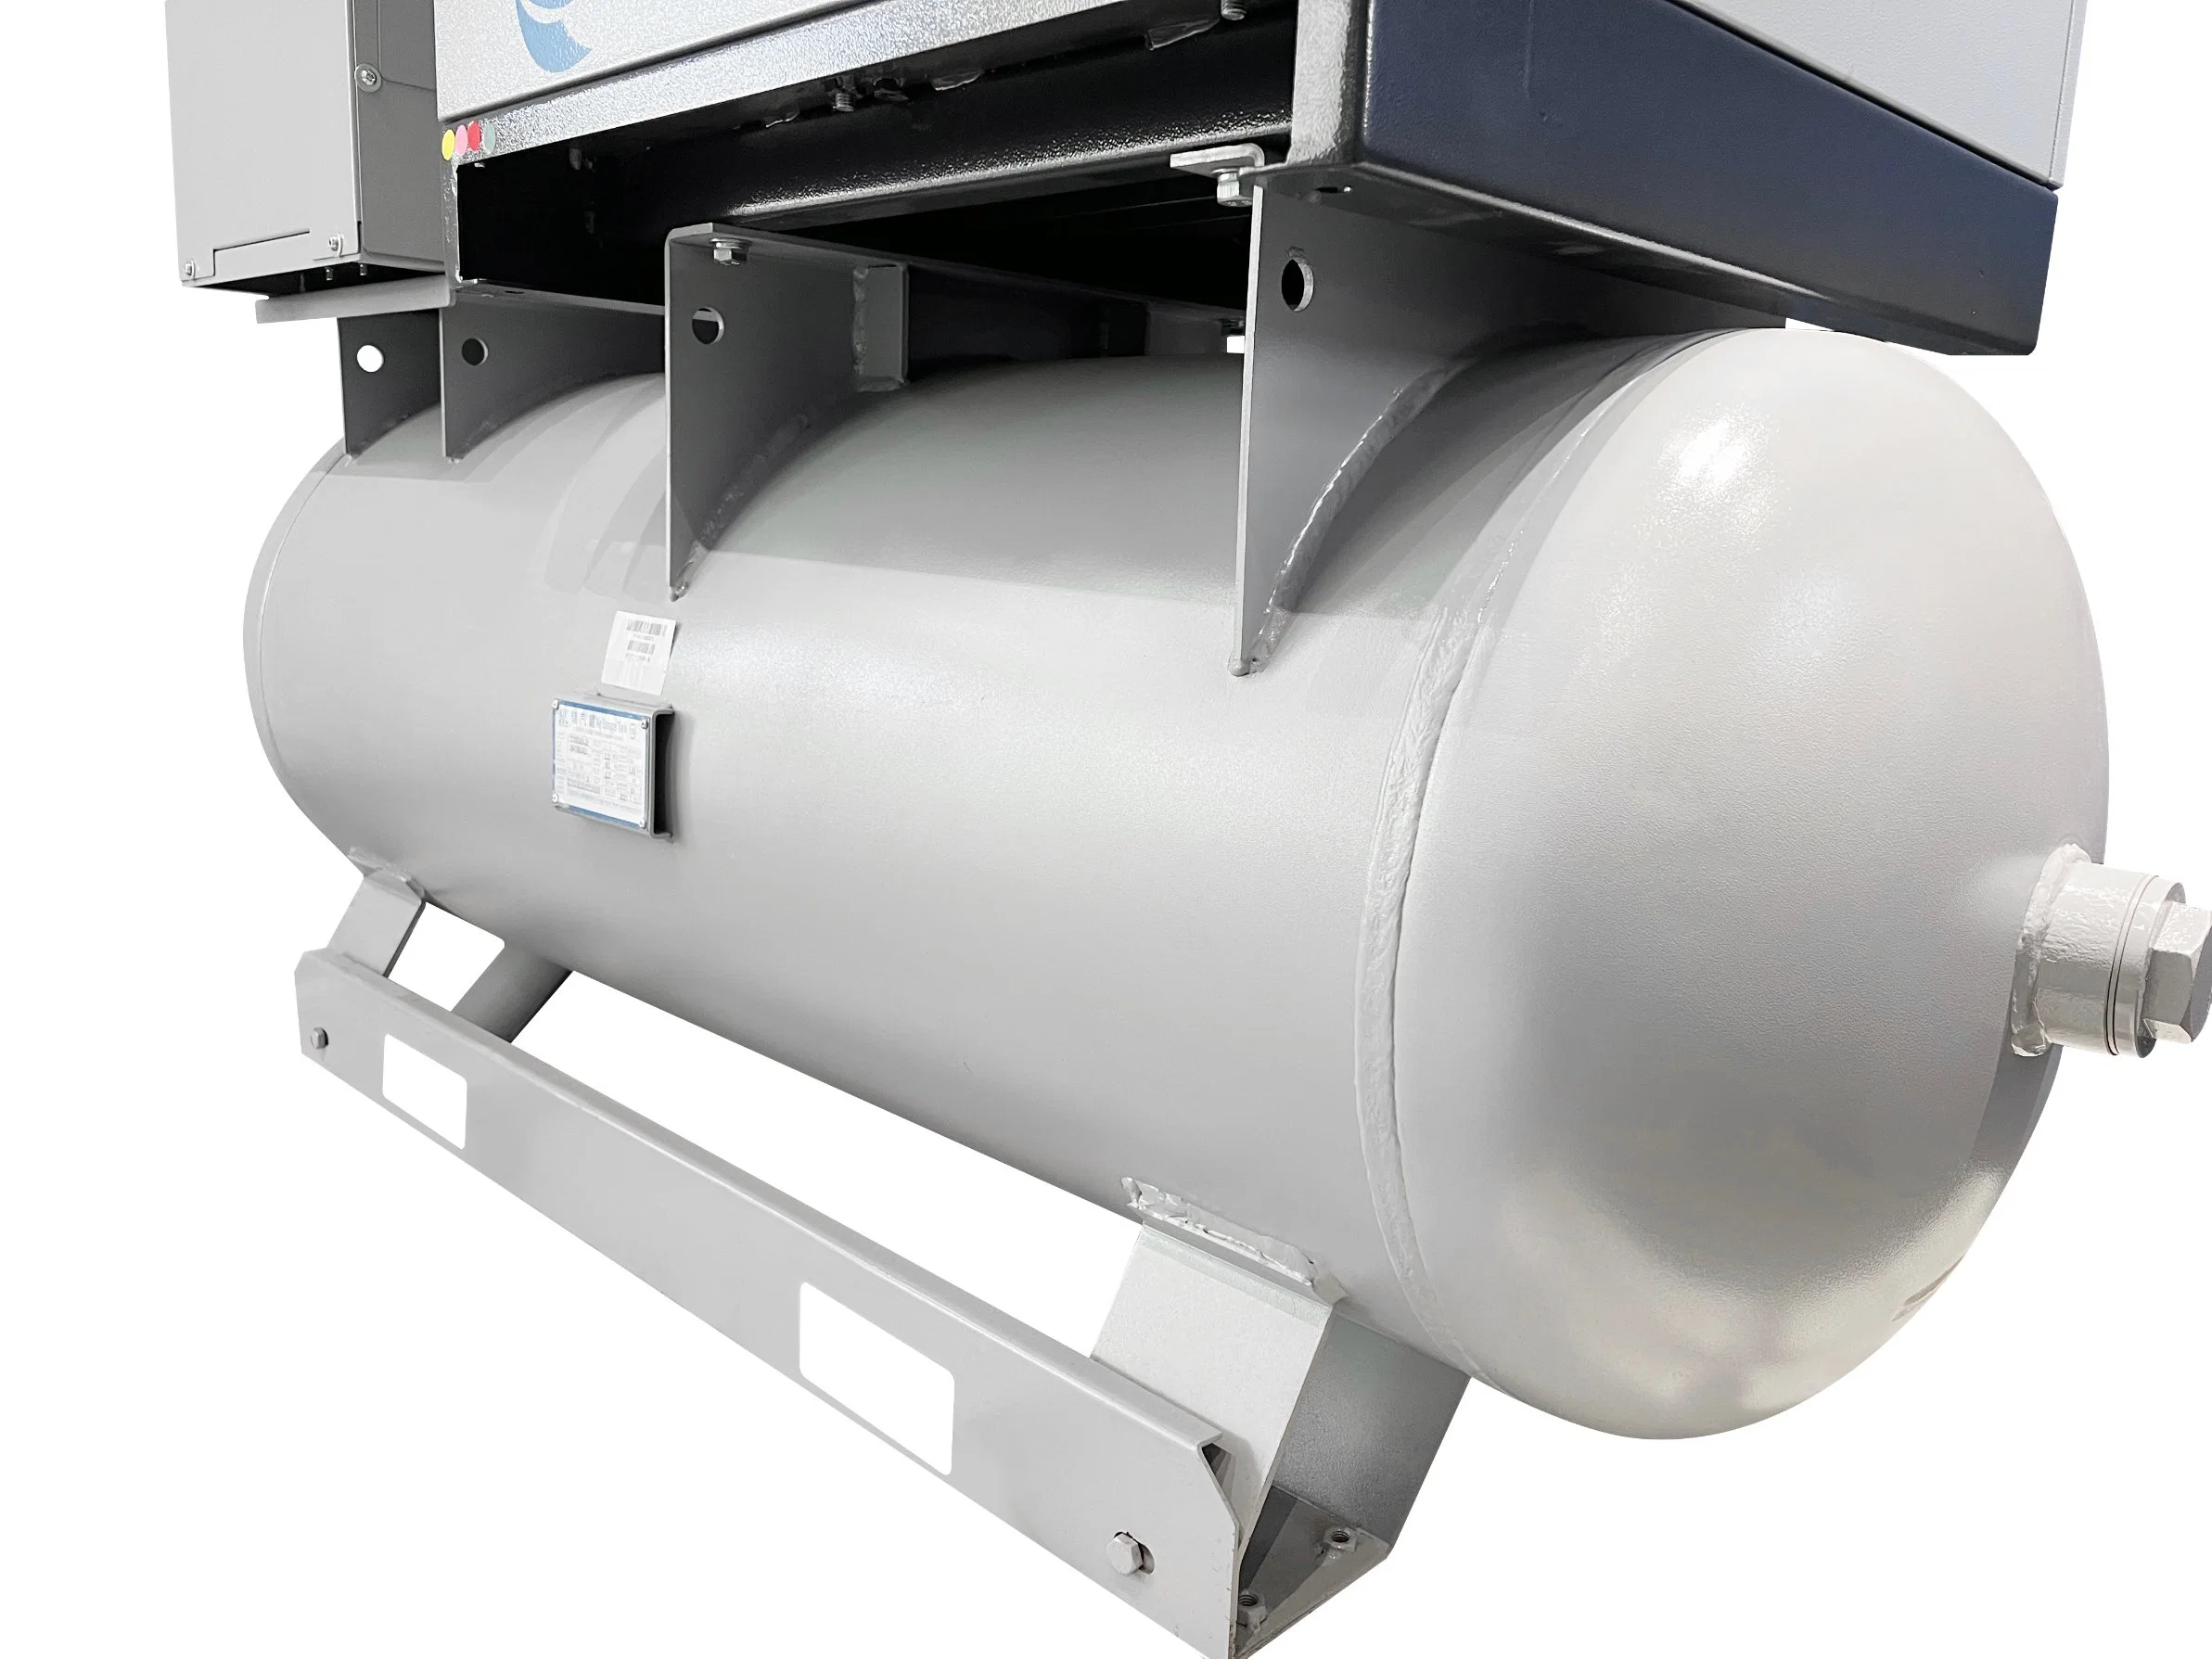 Compressor de Ar Industrial Linghein Equipamentos de tratamento de Qualidade, Segurança e Fiabilidade